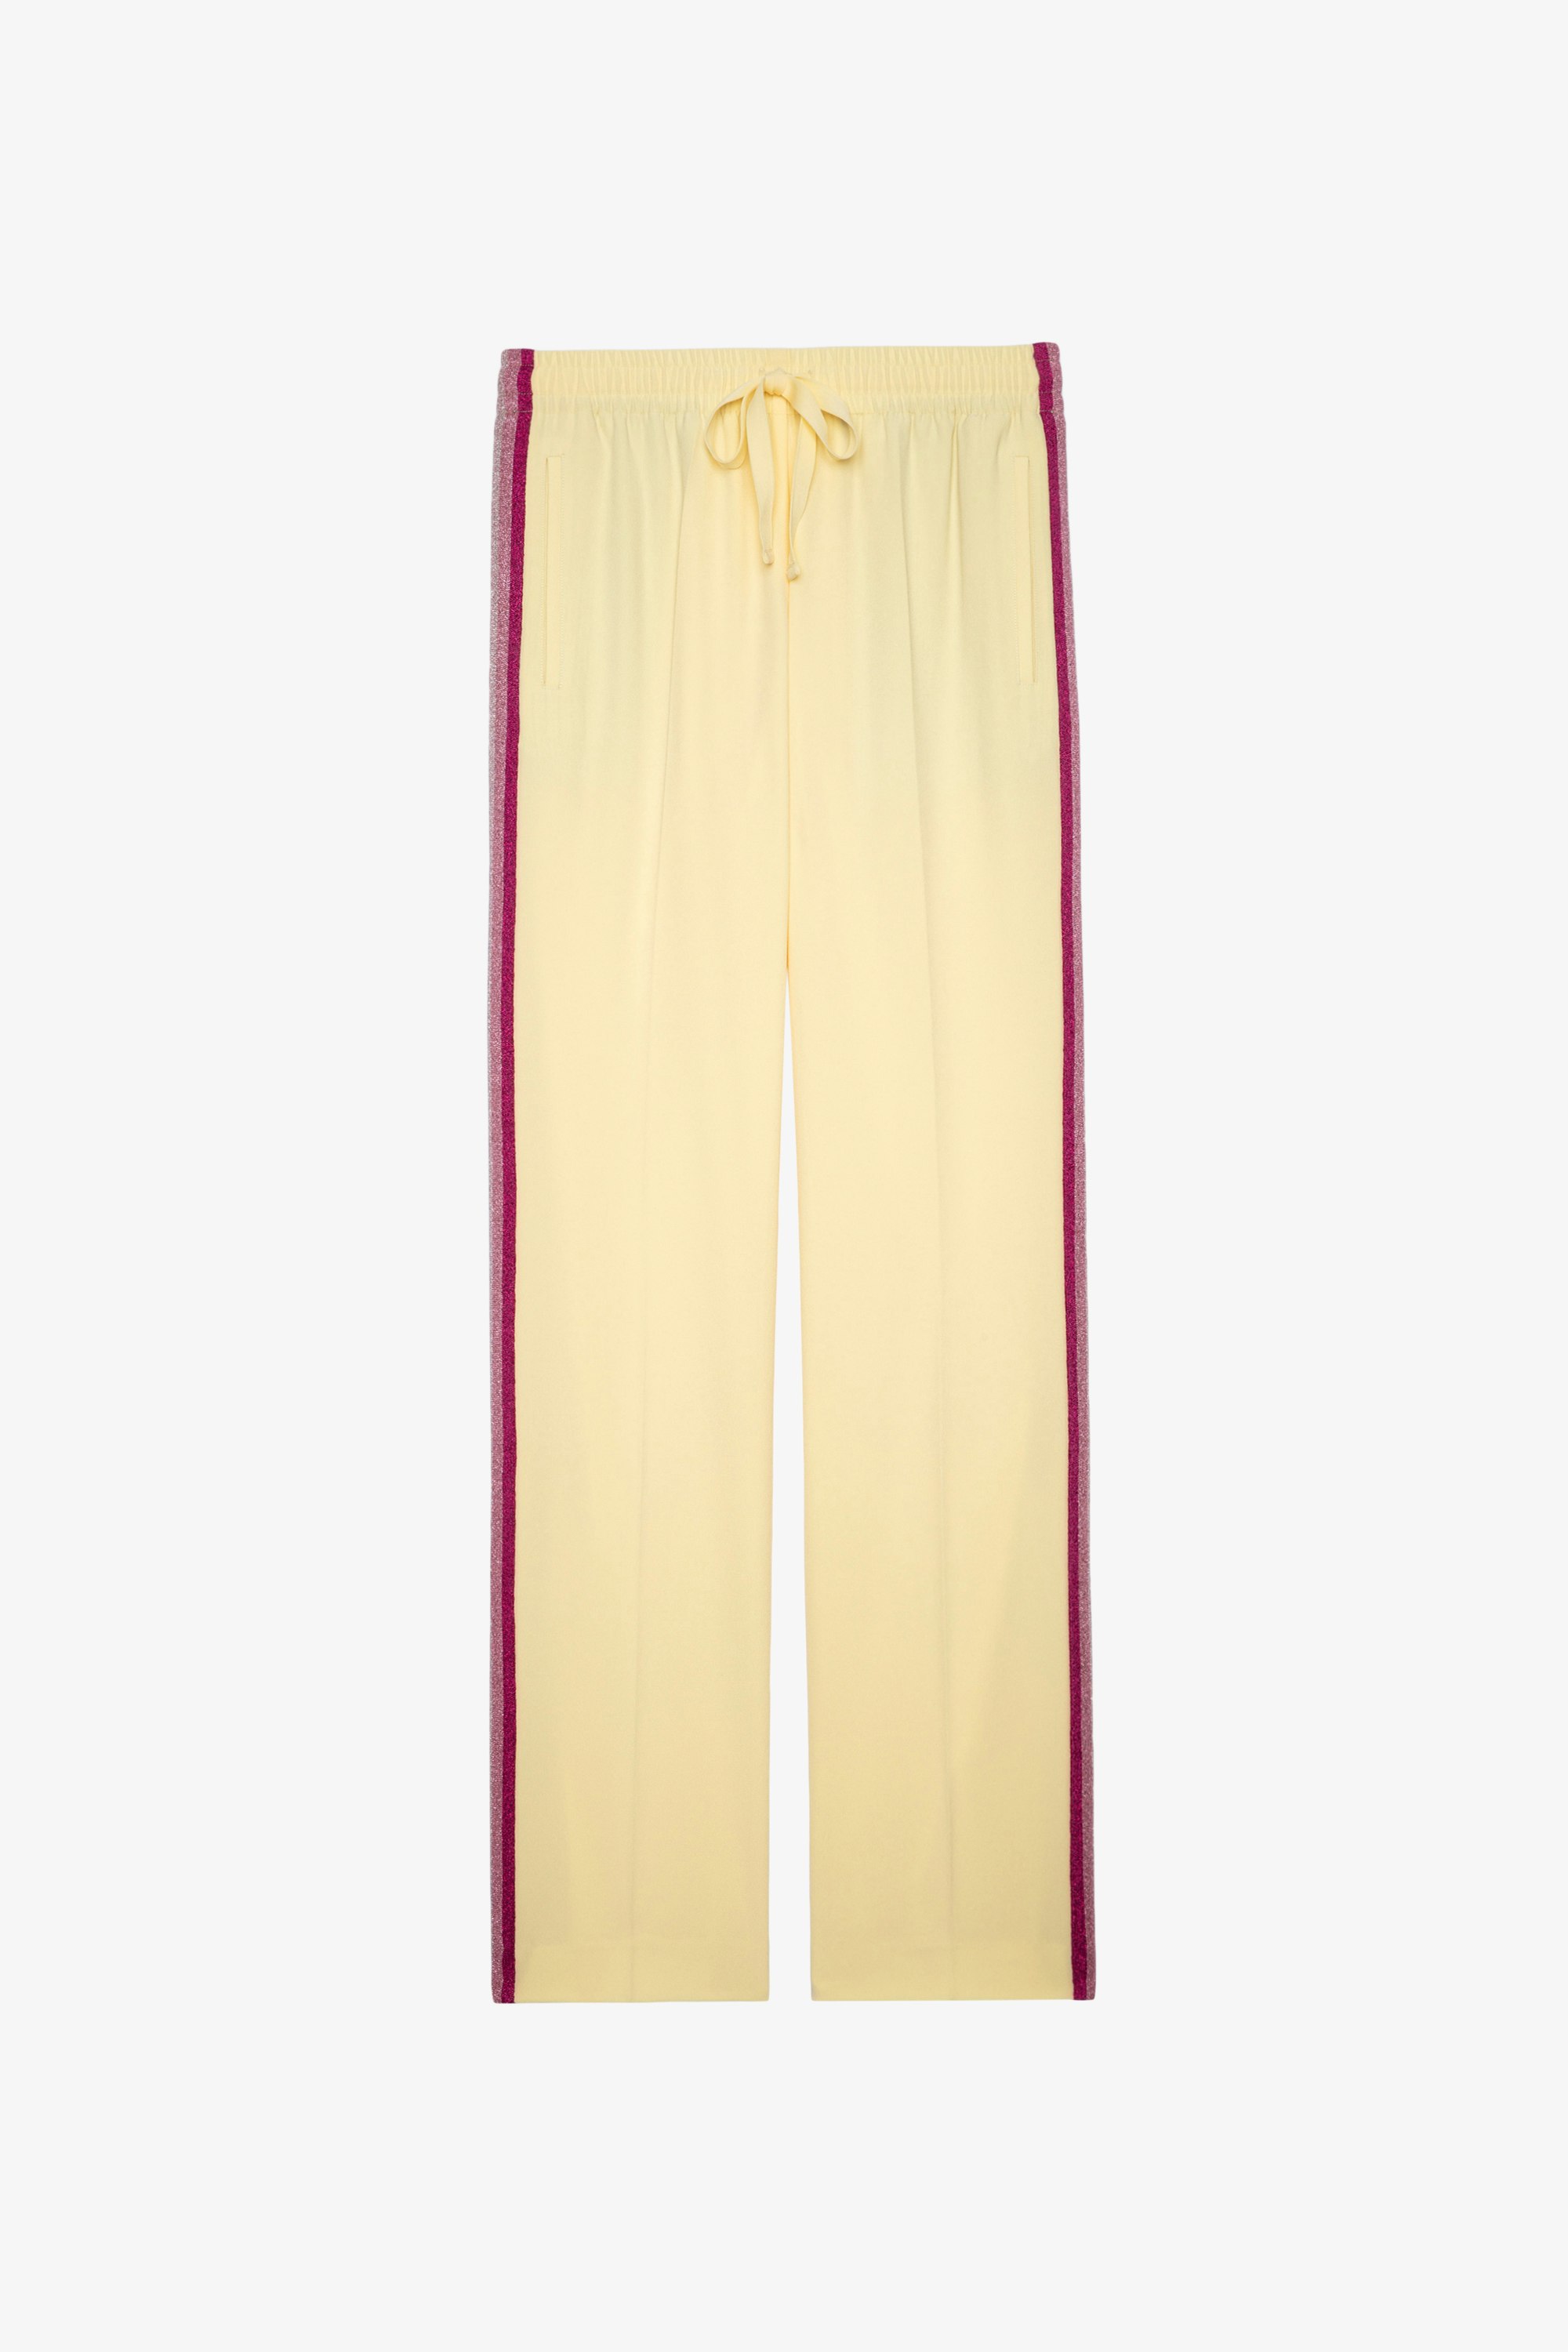 Pantalón Pomy Crepe Pantalón fluido amarillo con bandas laterales de purpurina para mujer